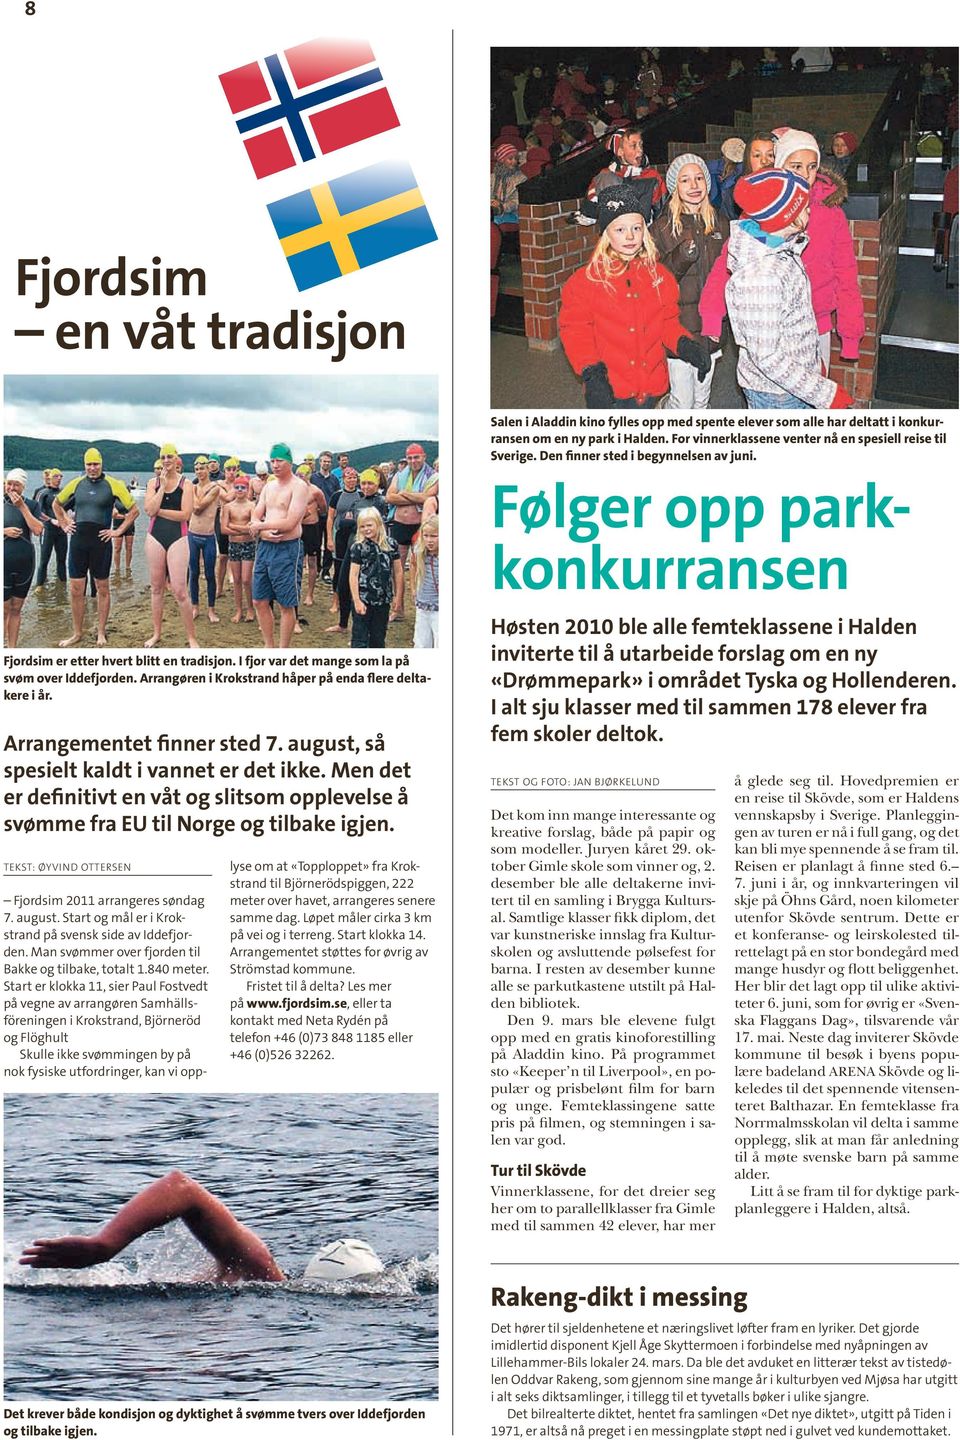 Arrangøren i Krokstrand håper på enda flere deltakere i år. Arrangementet finner sted 7. august, så spesielt kaldt i vannet er det ikke.